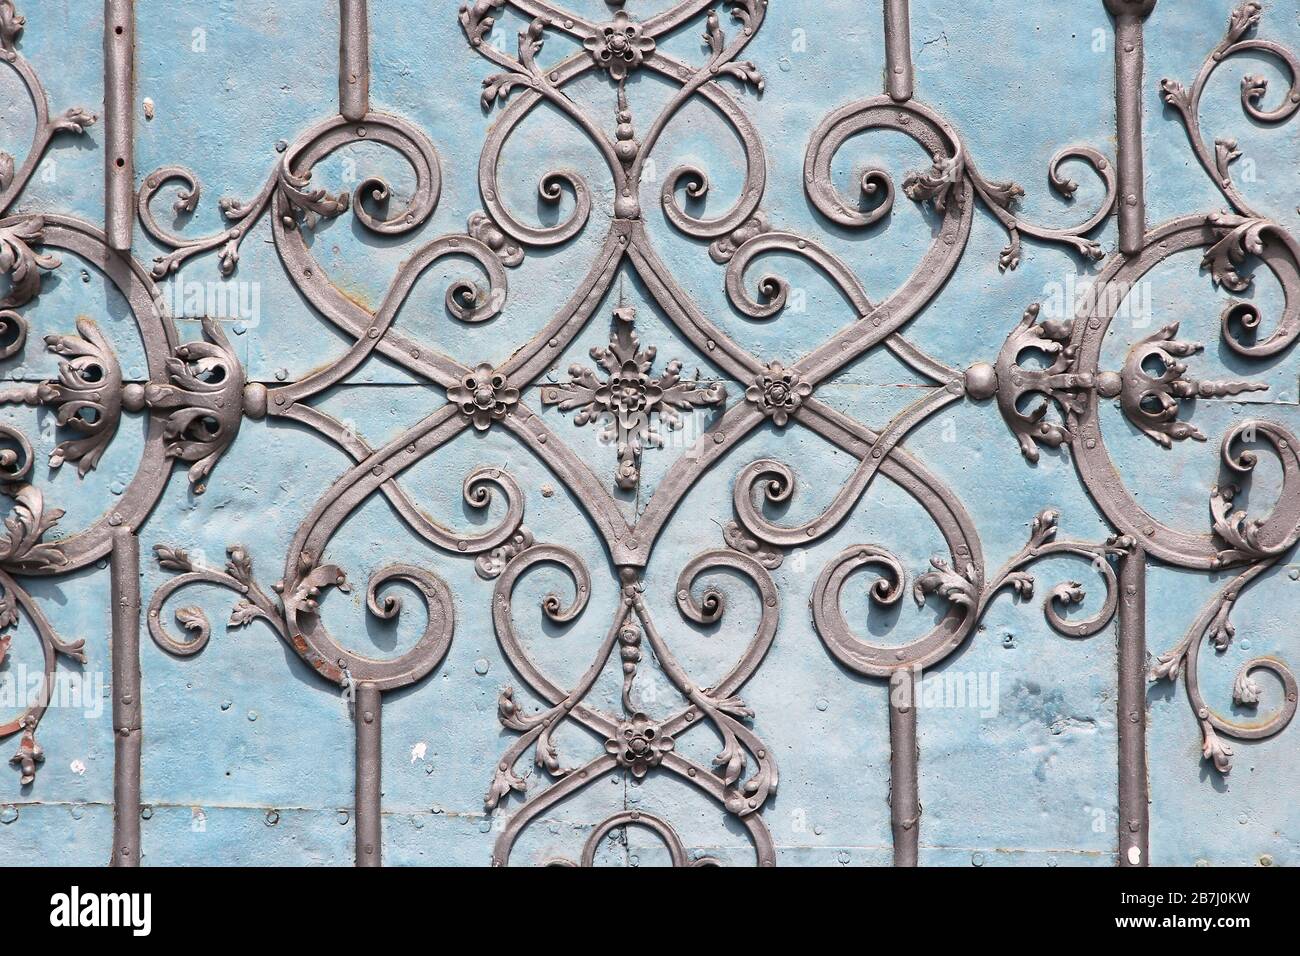 Arquitectura característica en Wroclaw, Polonia - ornamentos vintage de la puerta de hierro fundido. Foto de stock